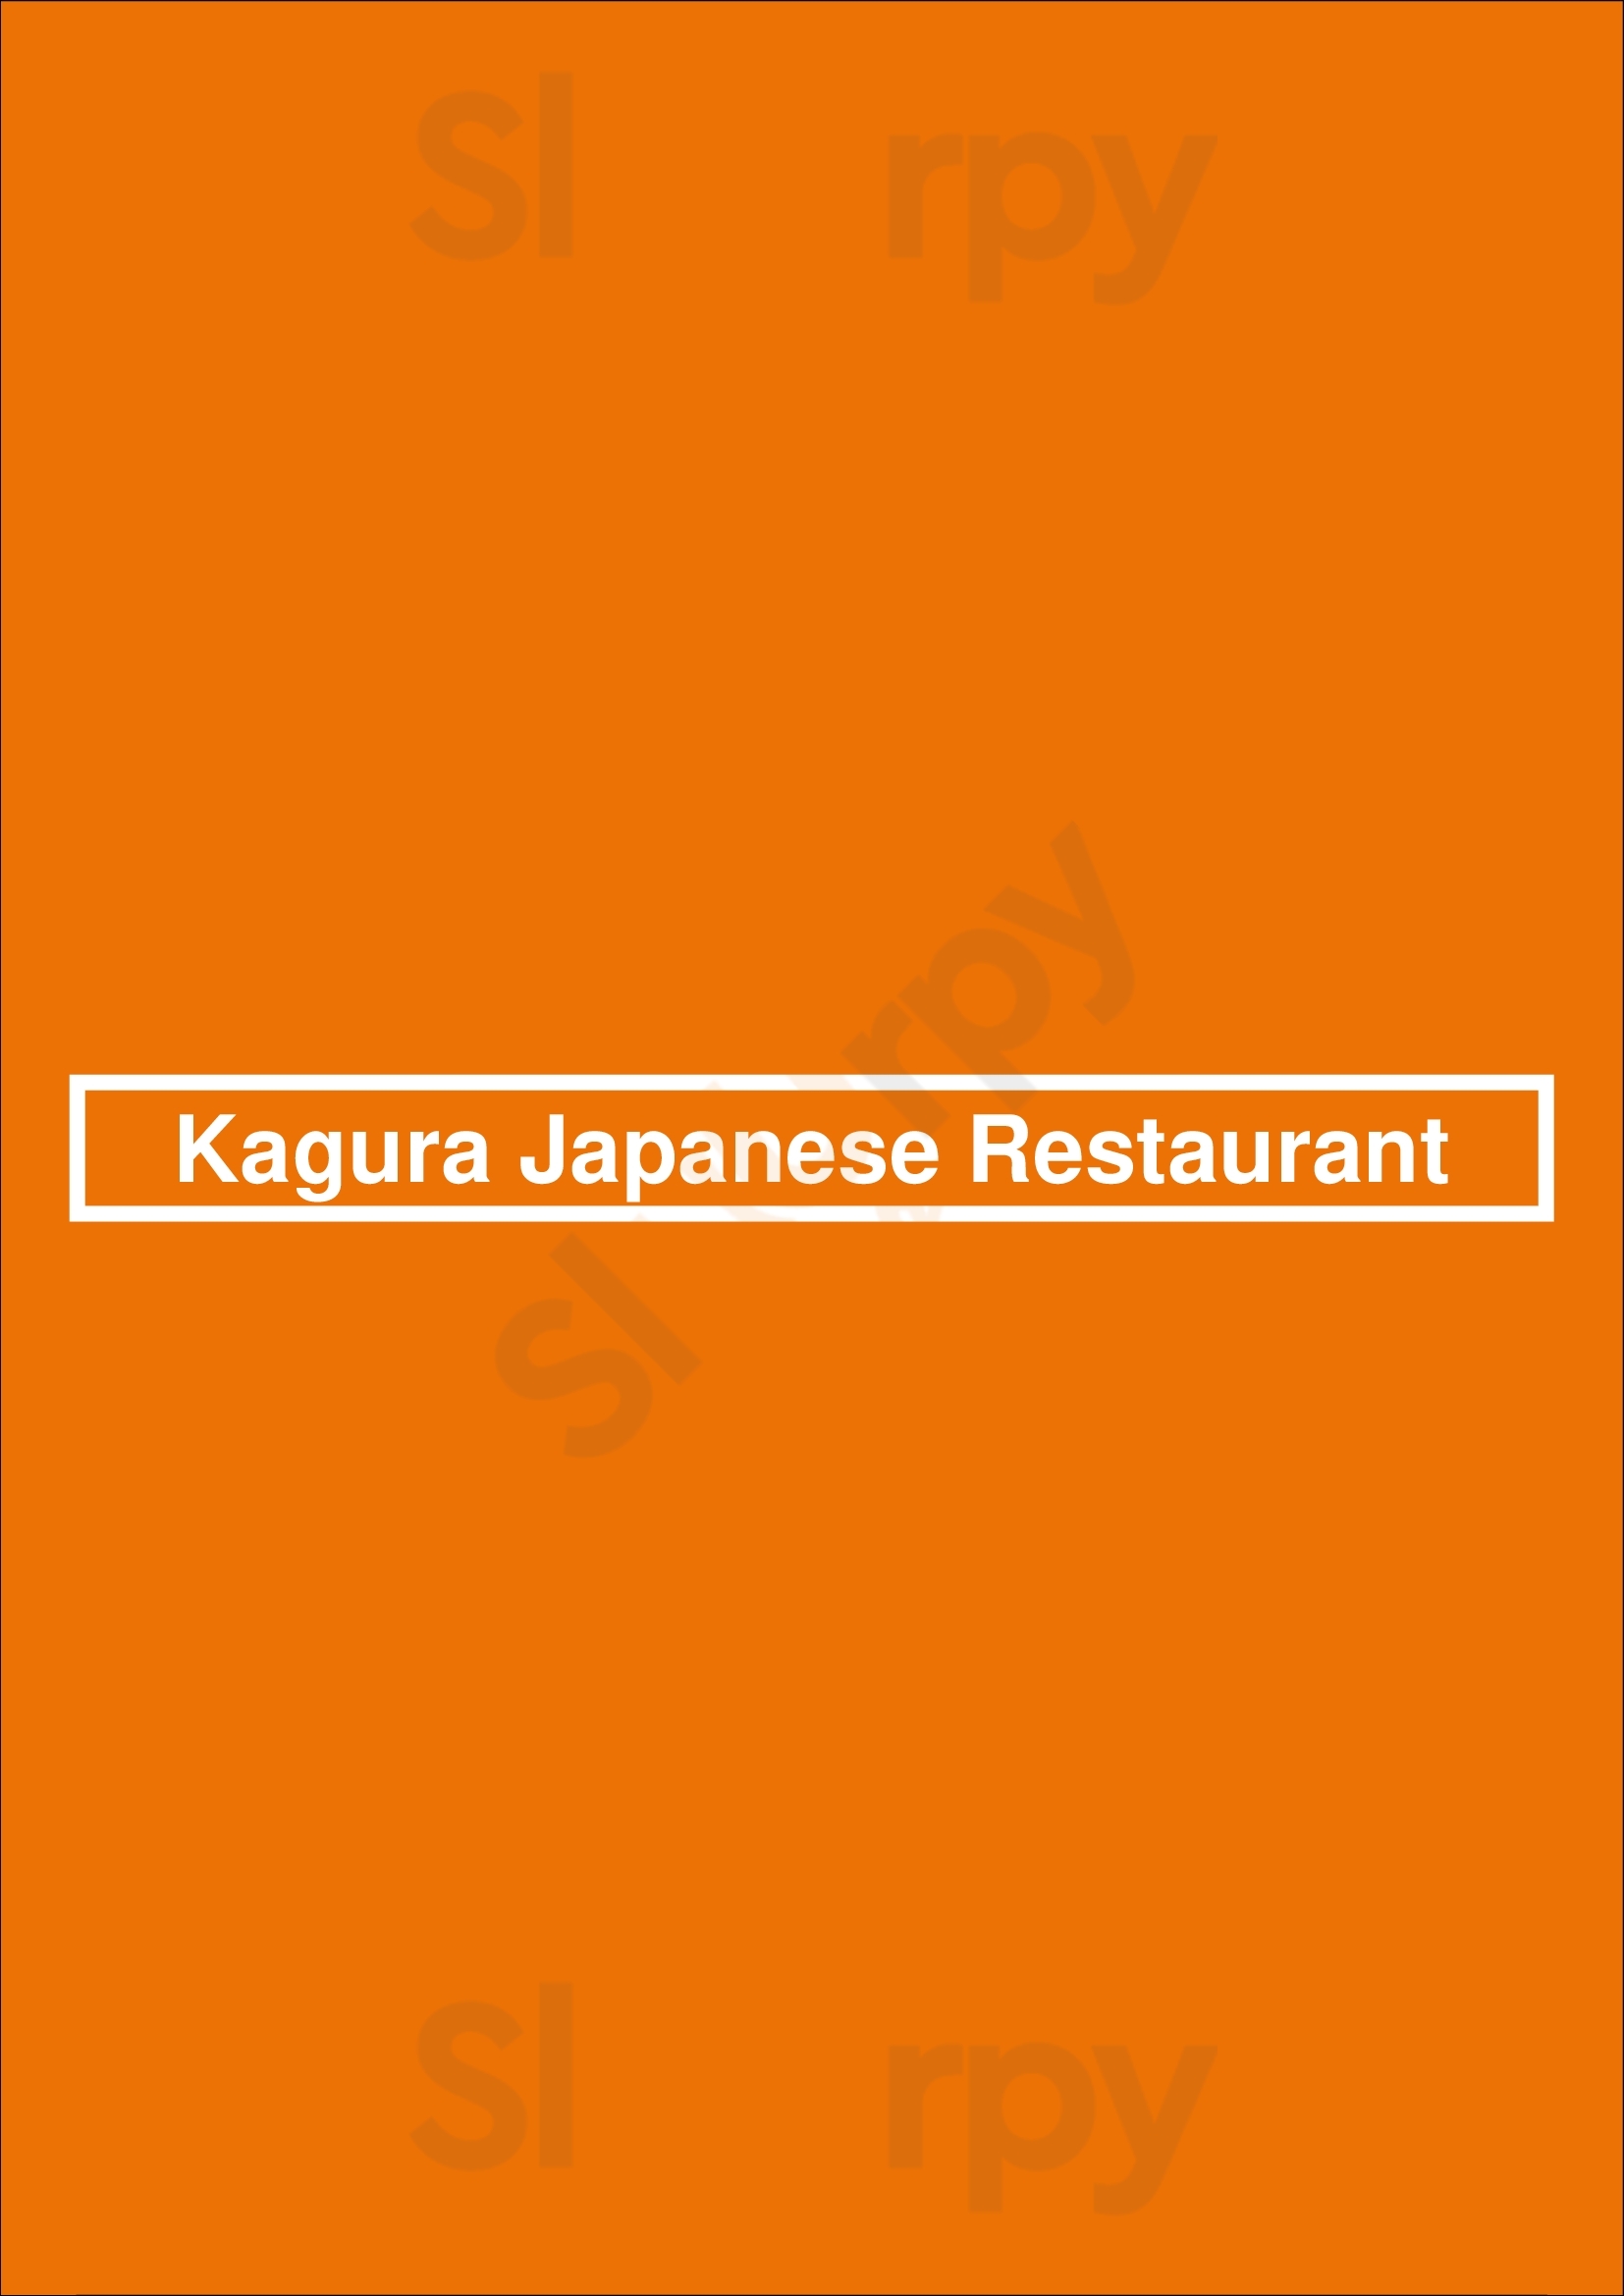 Kagura Japanese Restaurant Chesapeake Menu - 1